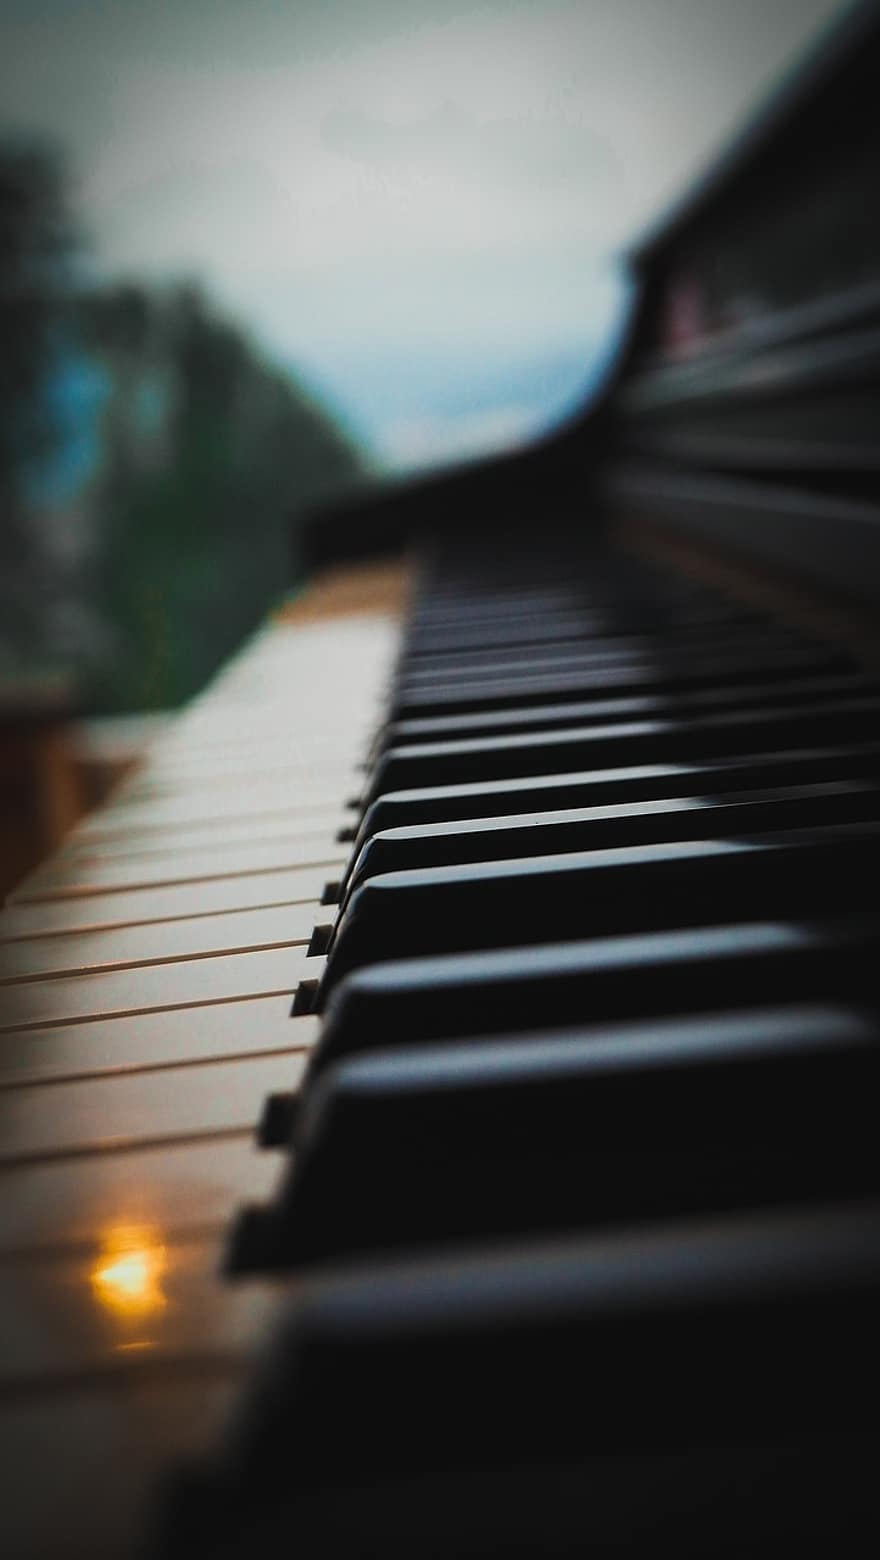 đàn piano, Thiên nhiên, đóng lại, Âm nhạc, nhạc cụ, phím đàn piano, nhạc sĩ, cận cảnh, học tập, luyện tập, Chìa khóa